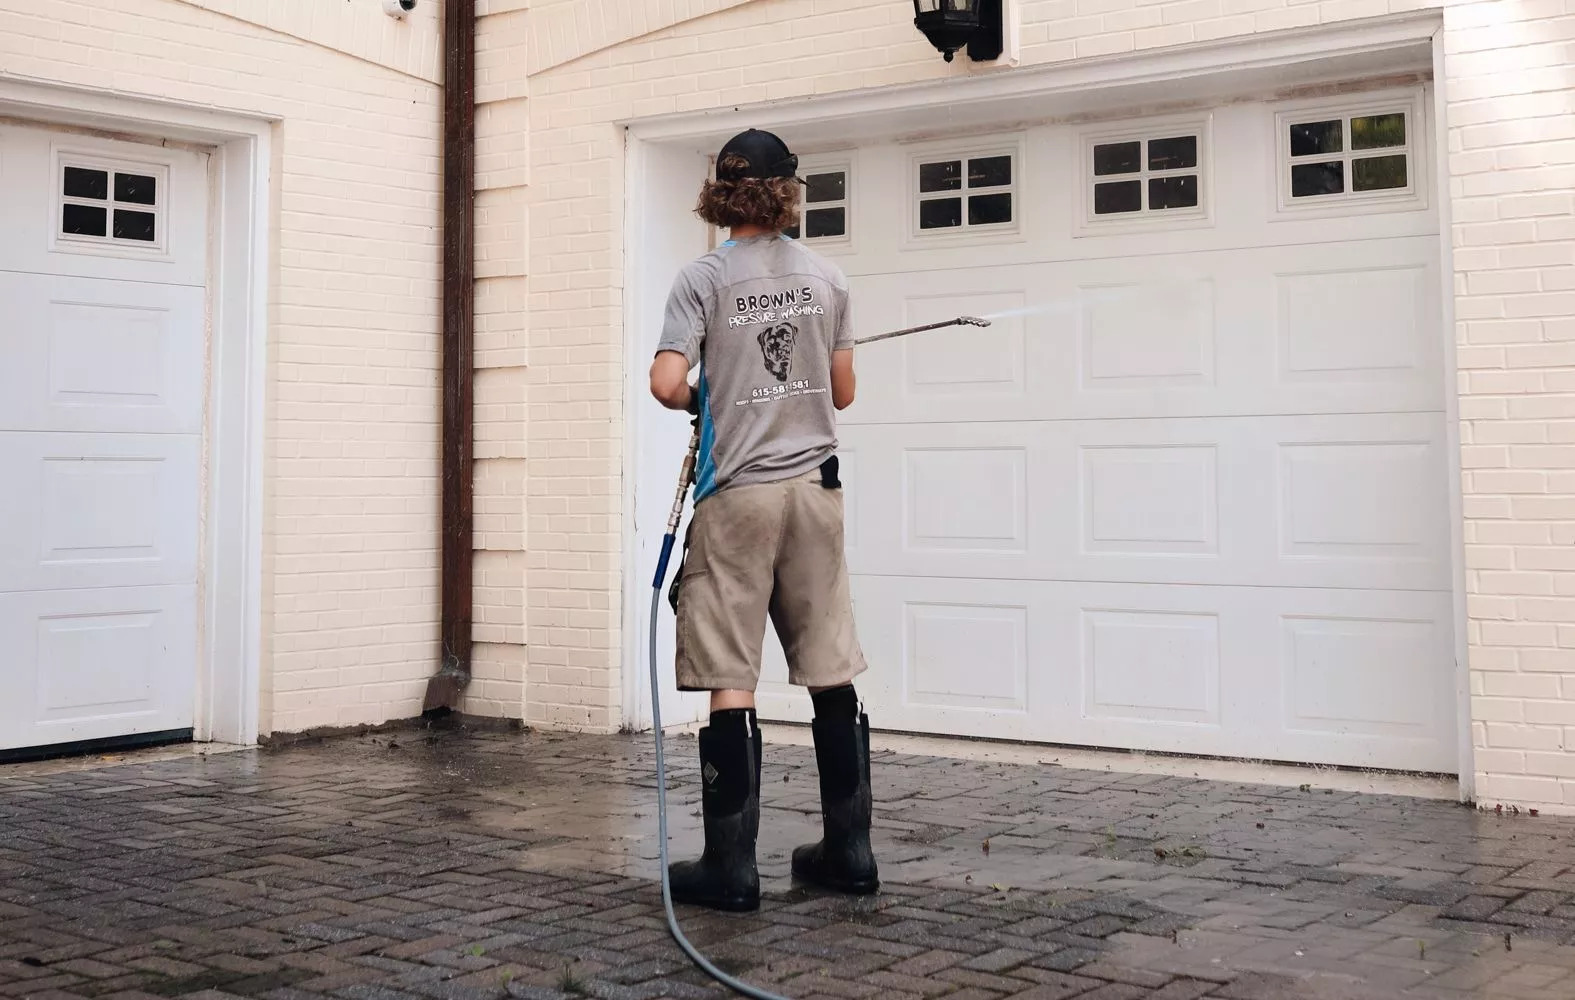 Brown's professional in black boots cleaning garage door